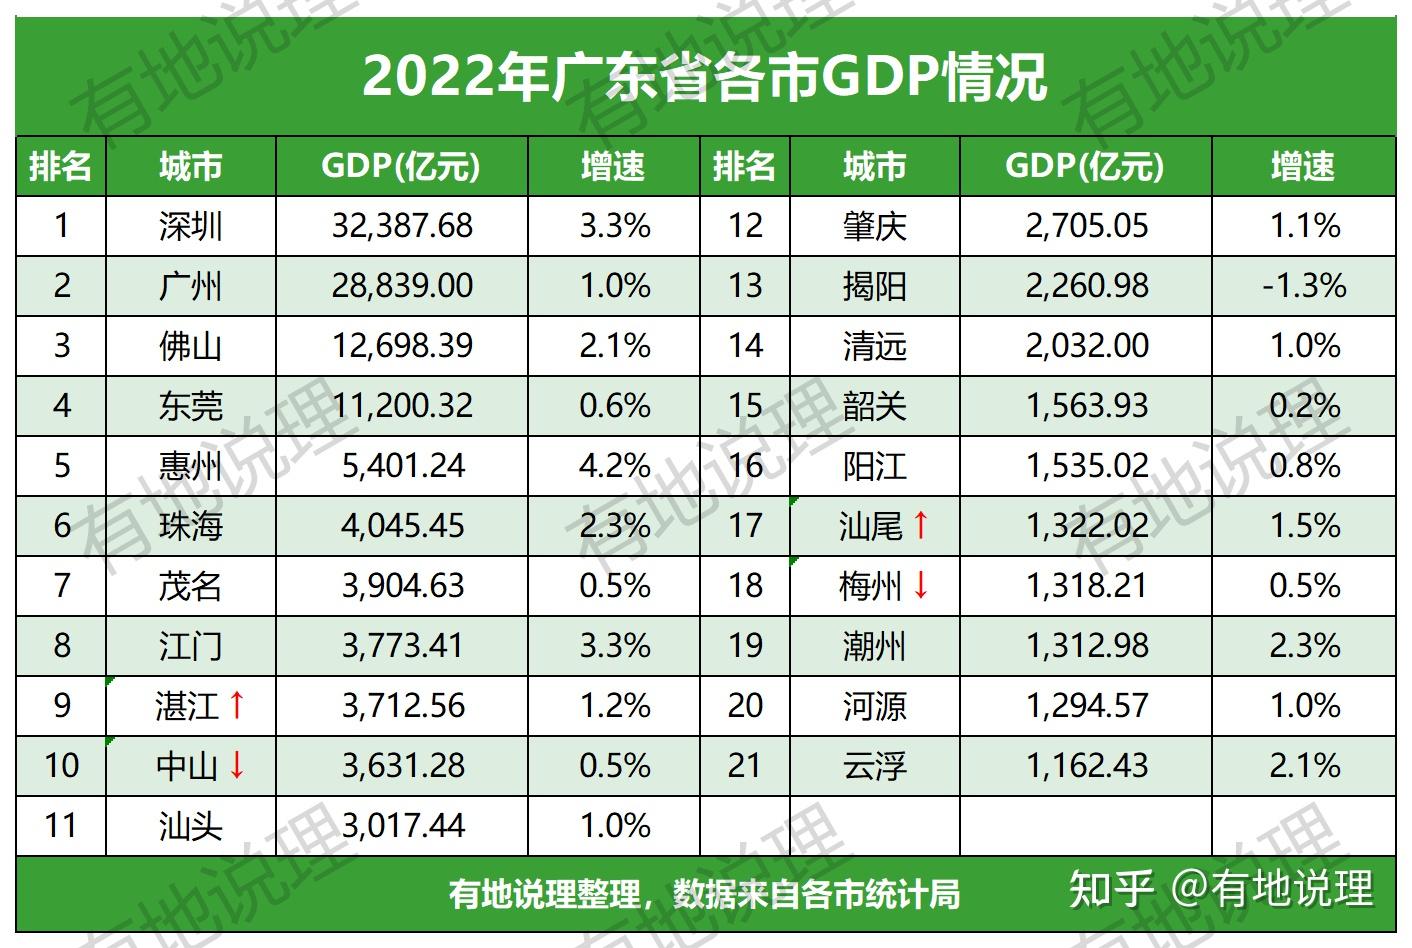 2022年广东21个地市gdp已全部公布,惠州增速最快,揭阳现负值,湛江赶超